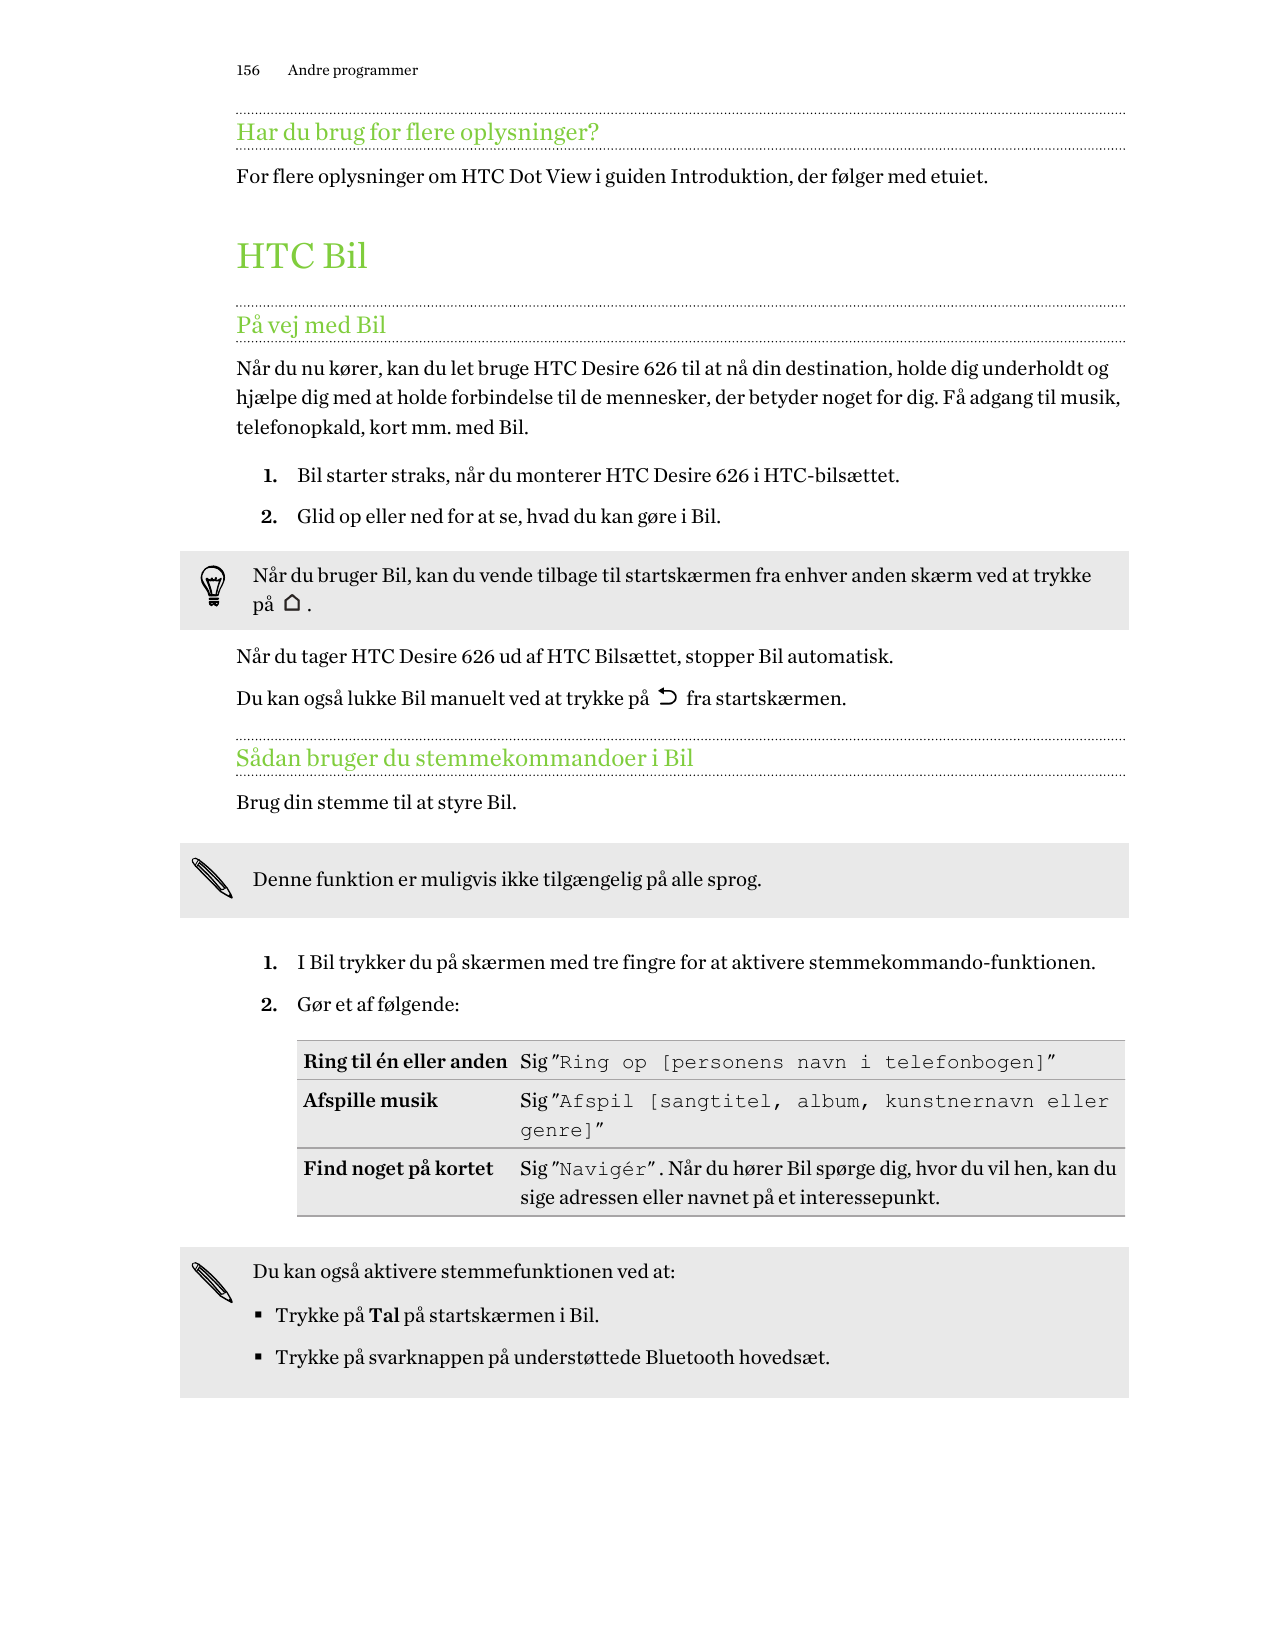 156Andre programmerHar du brug for flere oplysninger?For flere oplysninger om HTC Dot View i guiden Introduktion, der følger med